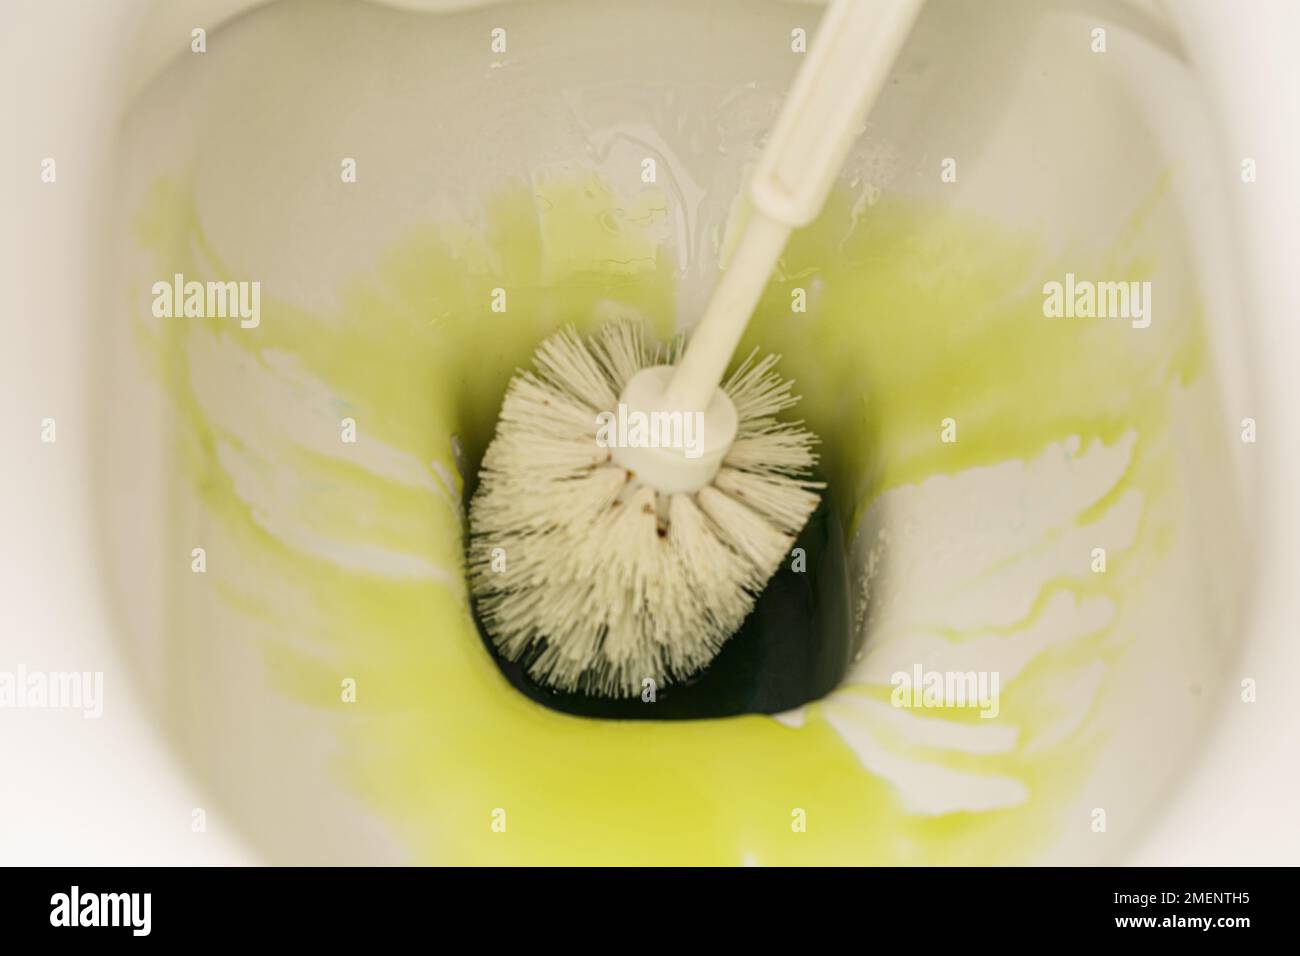 Una nuova interpretazione dell'attività non così elegante di pulizia del water, questa foto mostra la precisione e l'efficienza di una spazzola per wc Foto Stock